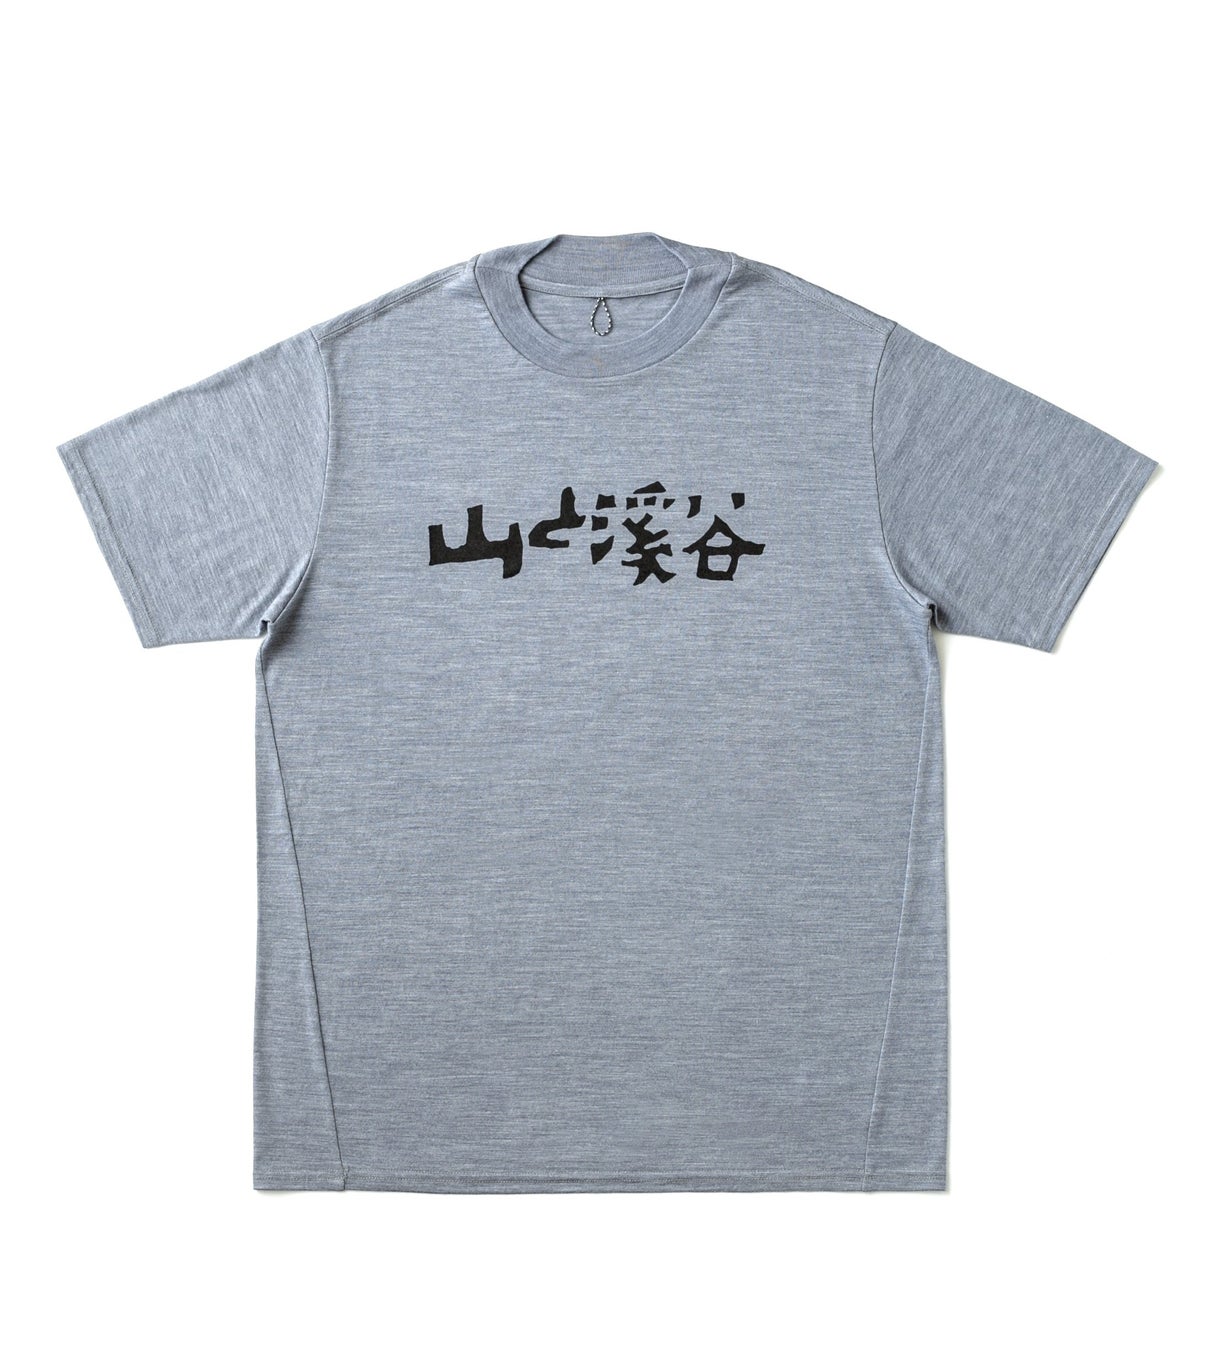 出版社が出店するオンデマンドプリントTシャツモール「pTa.shop」にて、期間限定『山と溪谷』メリノウールTシャツが販売開始